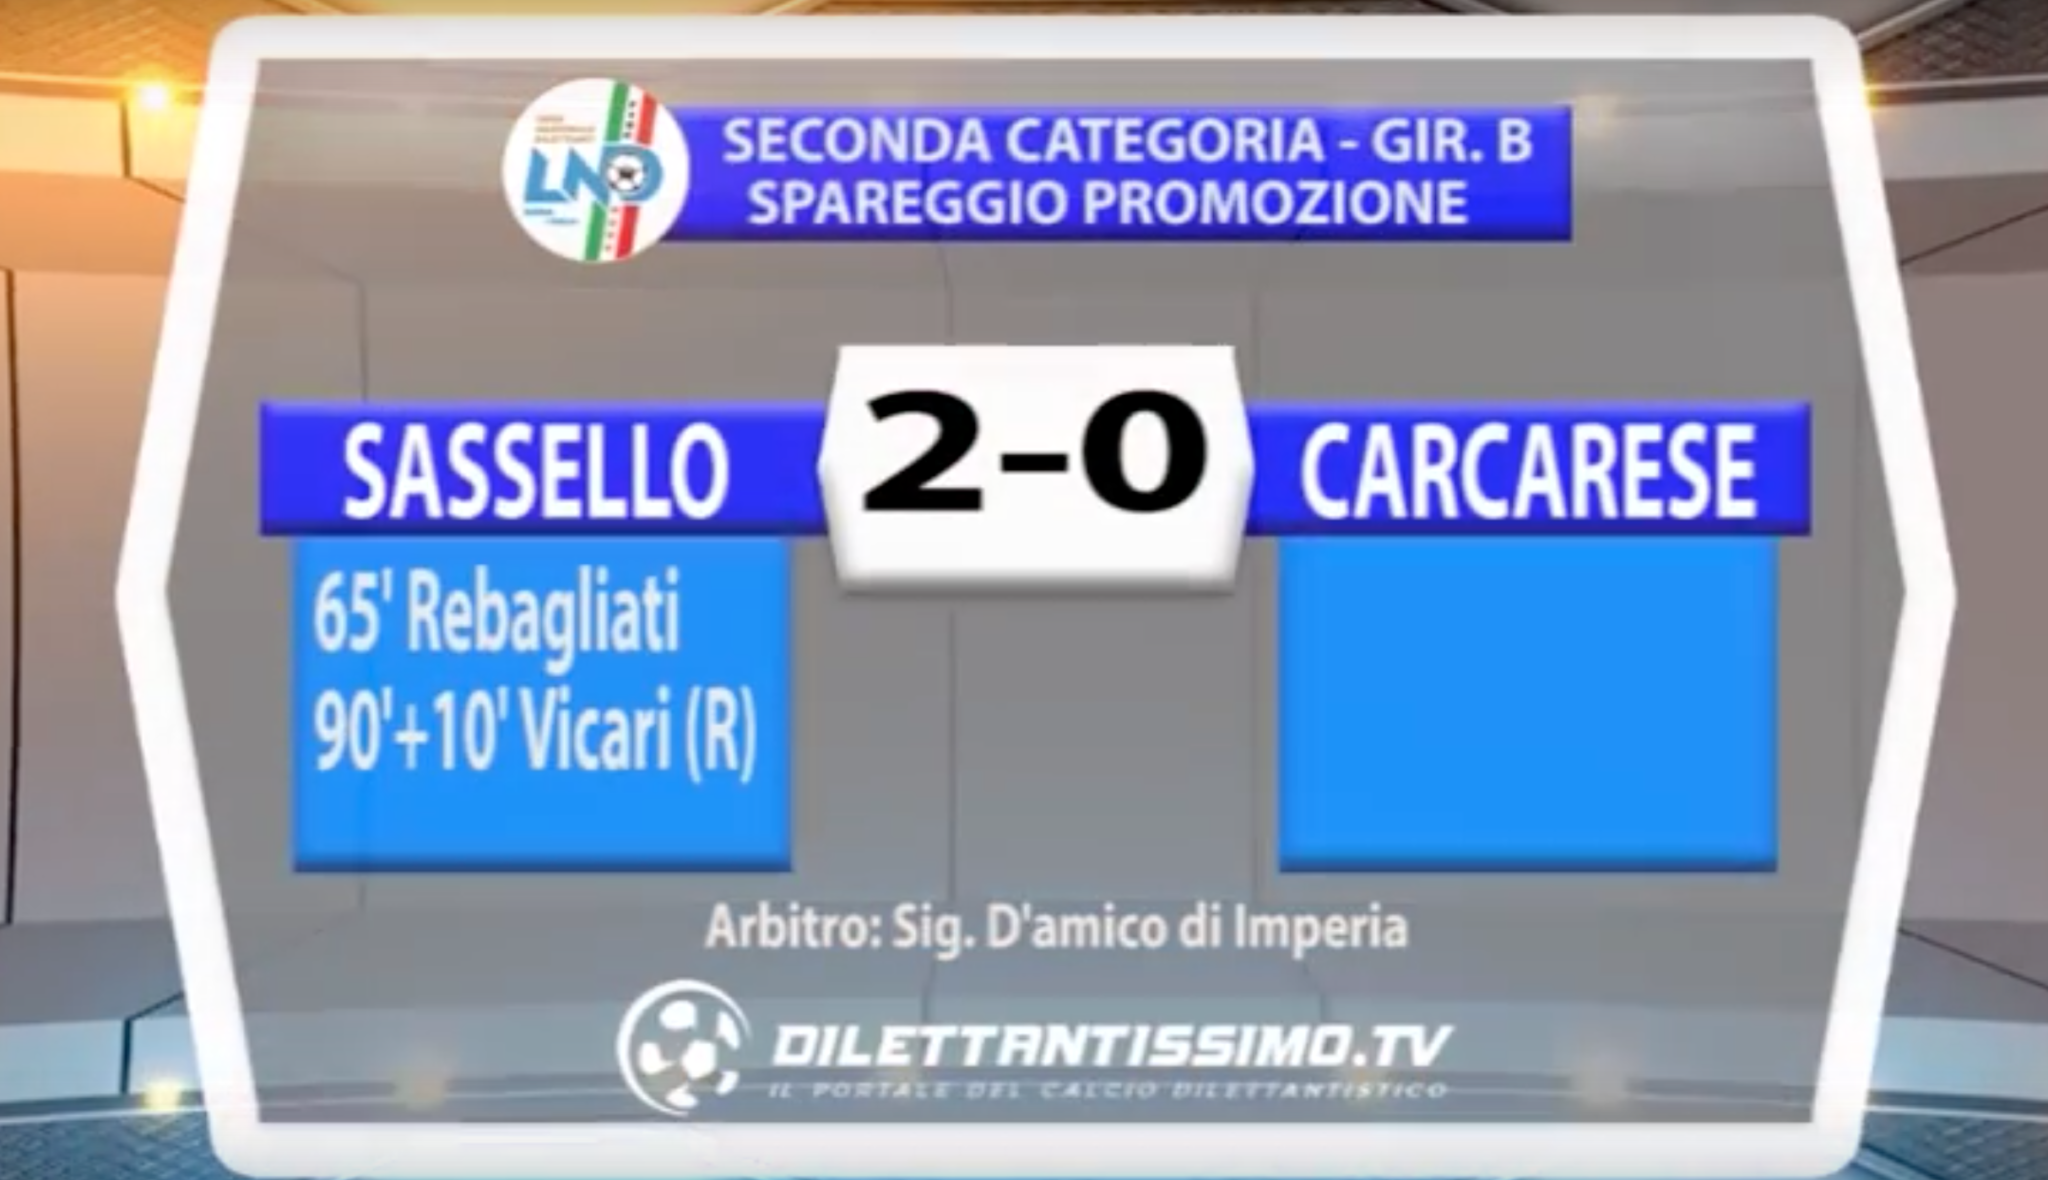 SASSELLO - CARCARESE 2-0 | SPAREGGIO SECONDA CAT. GIR. B